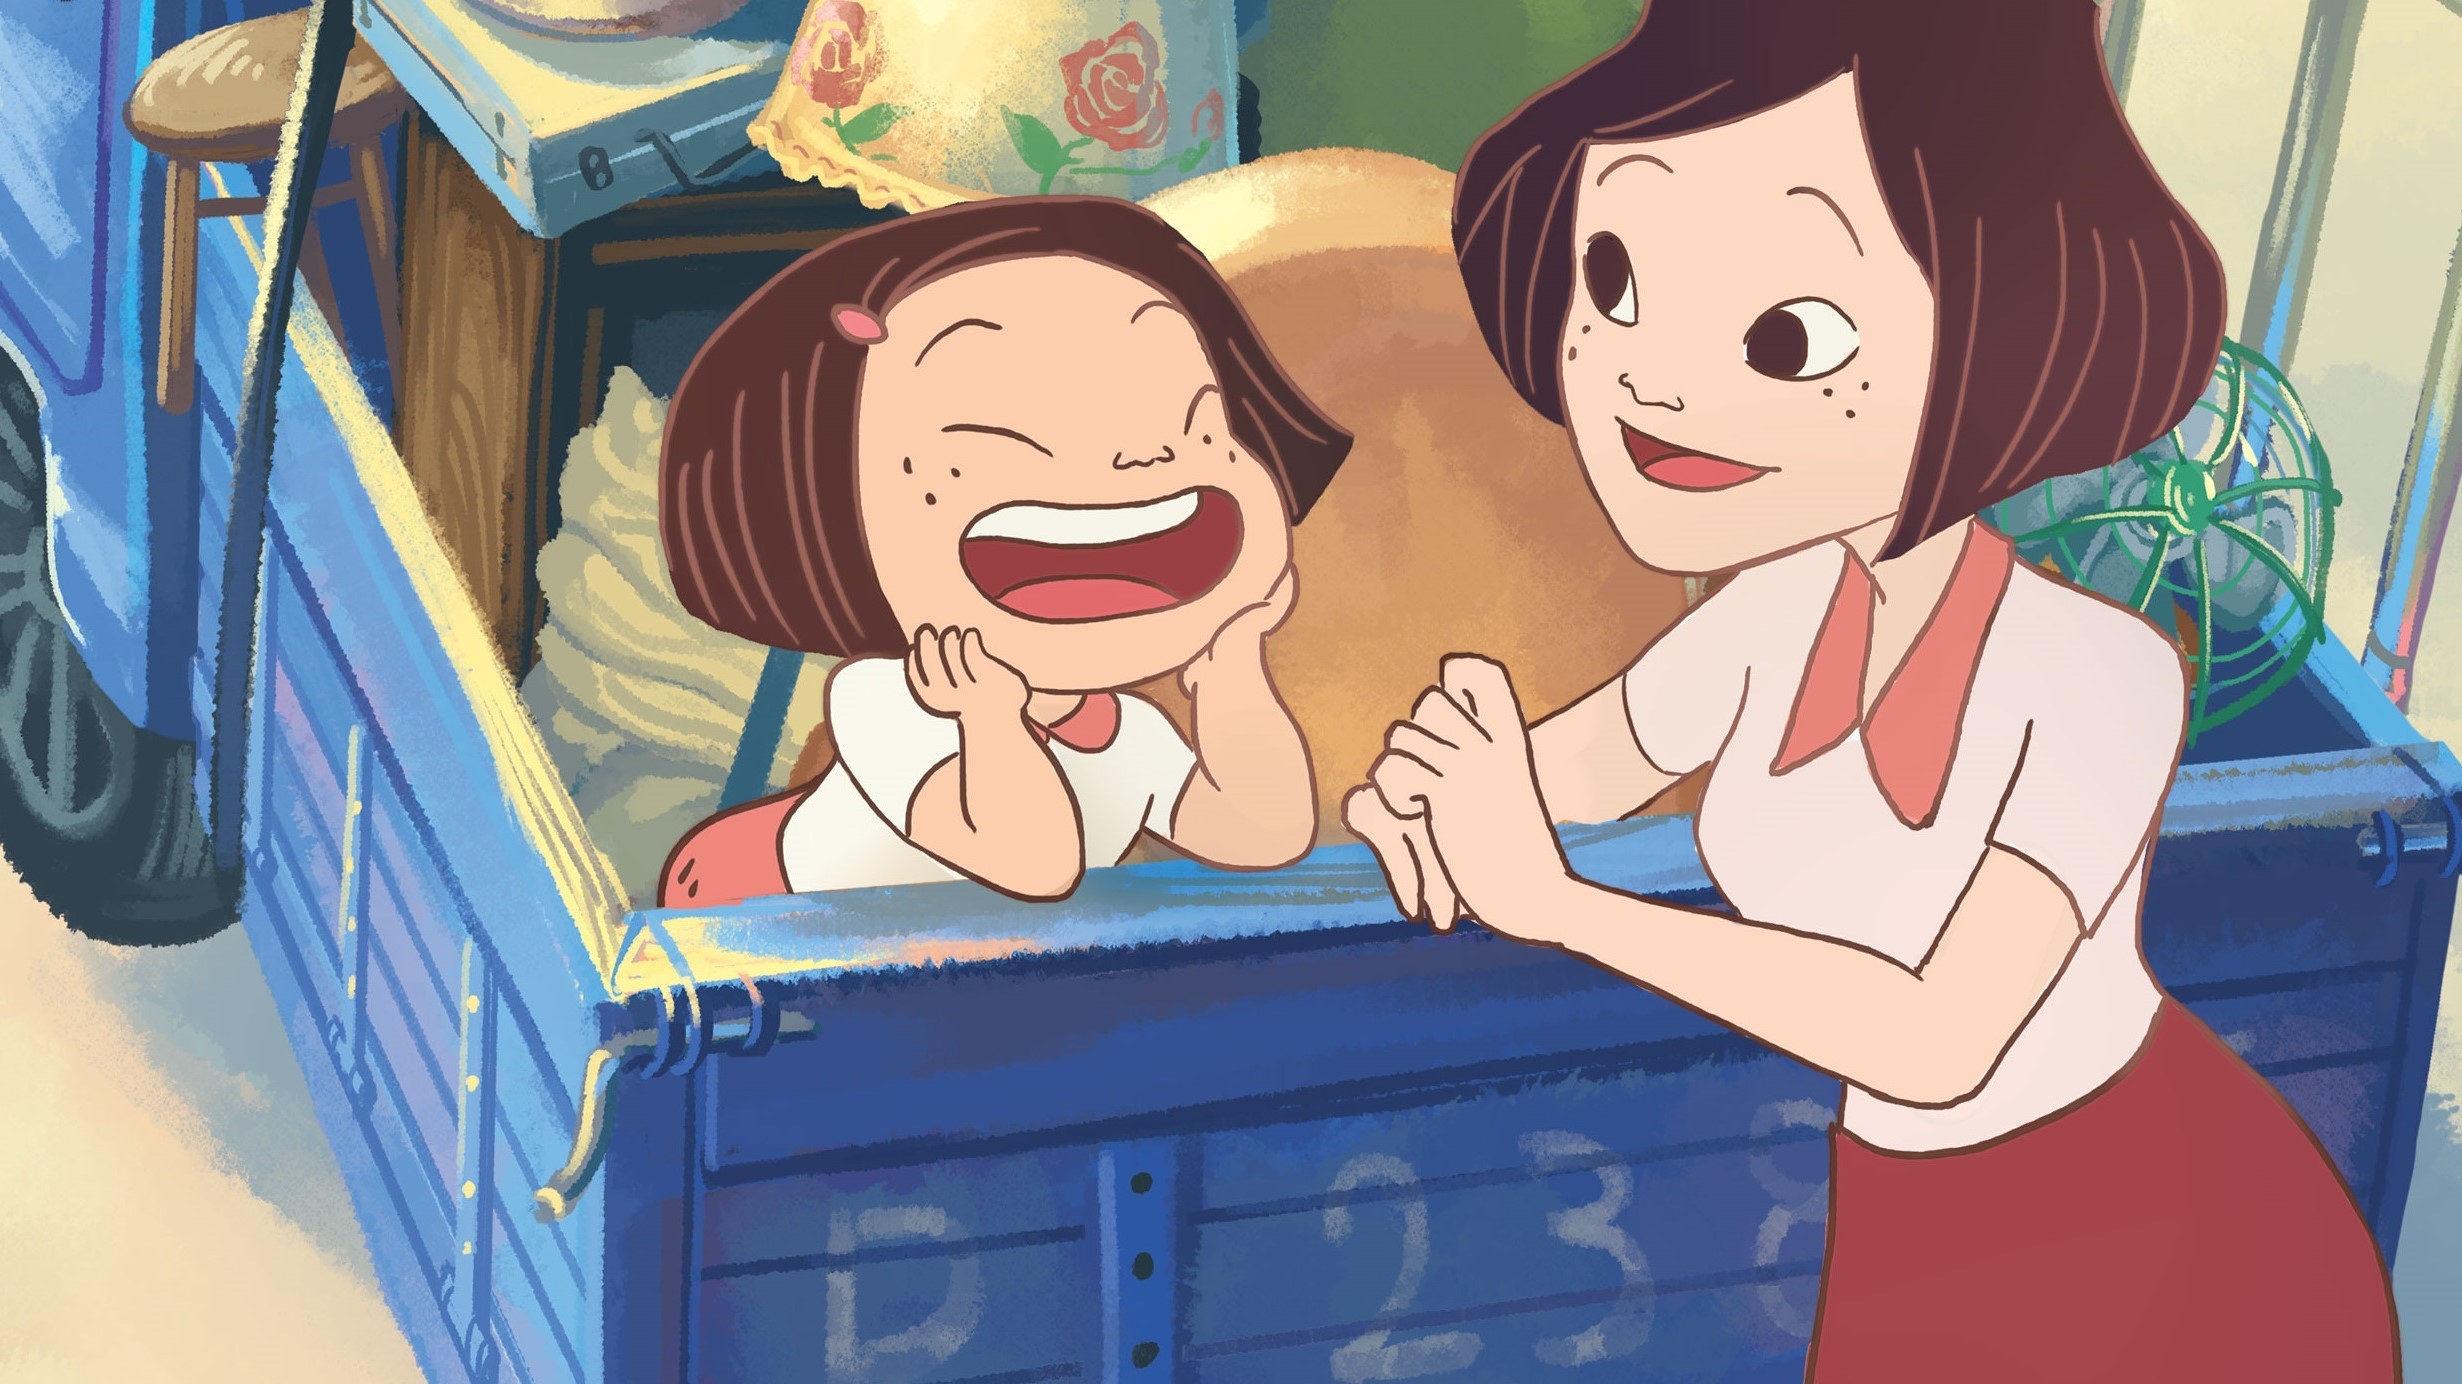 予告編で泣いた 奇跡のアニメ映画 幸福路のチー はなぜこうも大人の胸を打つのか ついに日本でも公開 ロケットニュース24